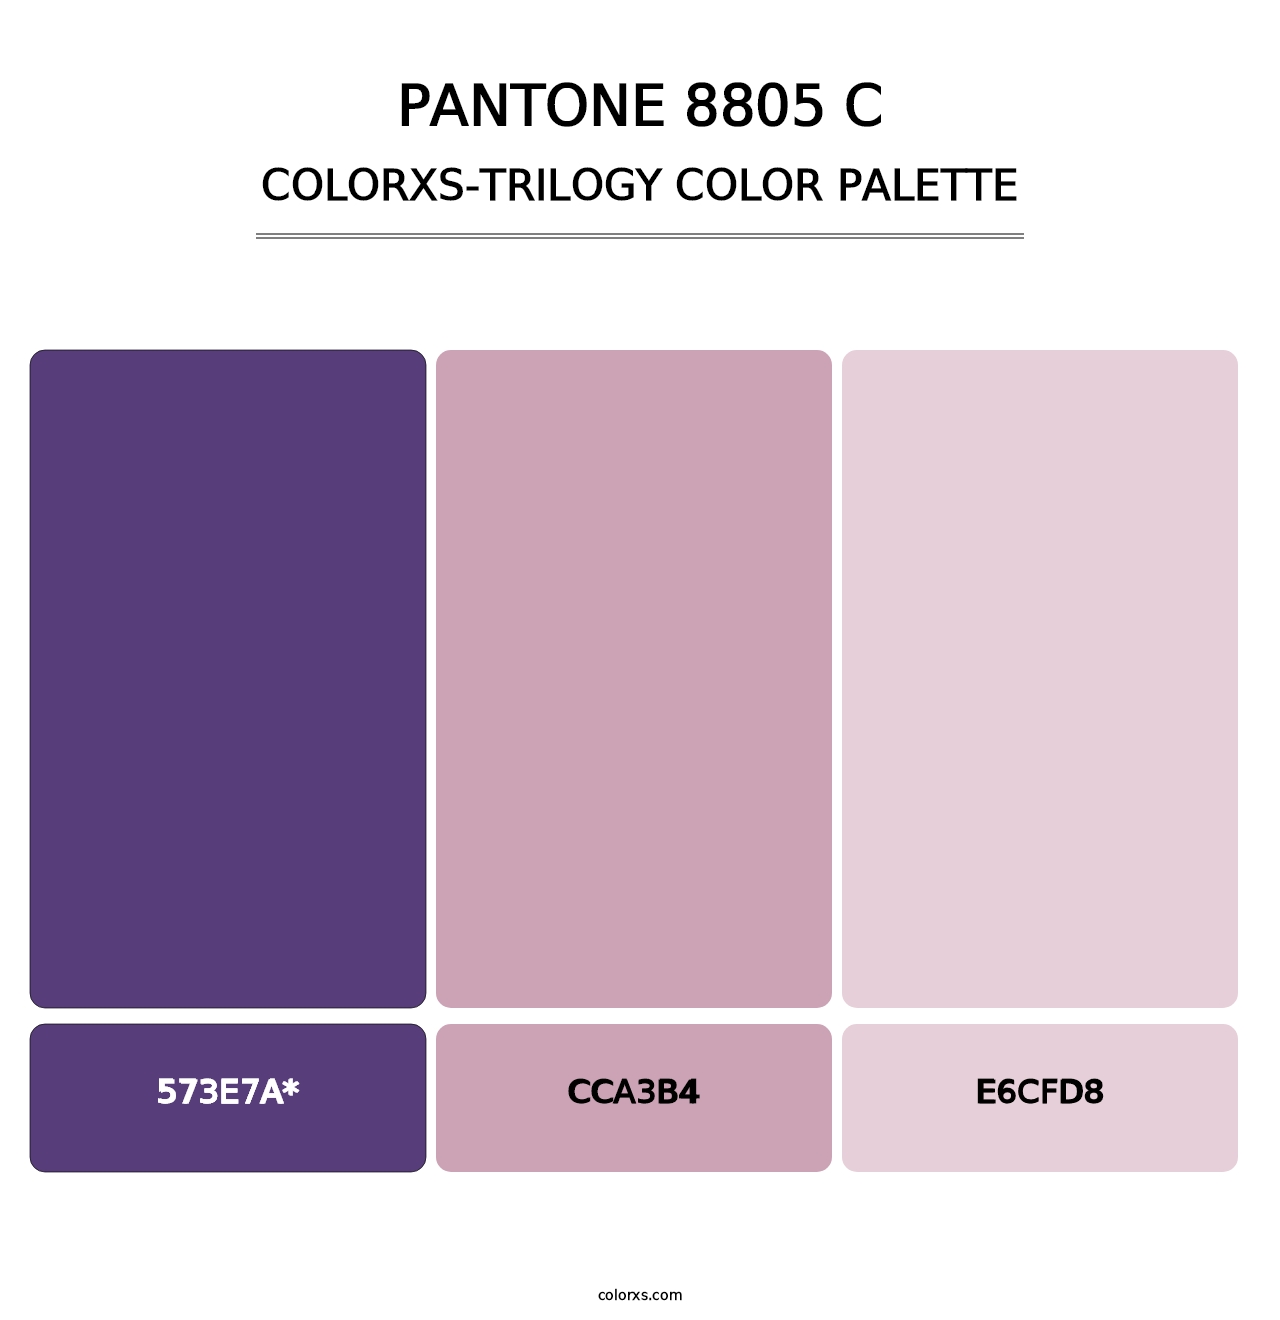 PANTONE 8805 C - Colorxs Trilogy Palette